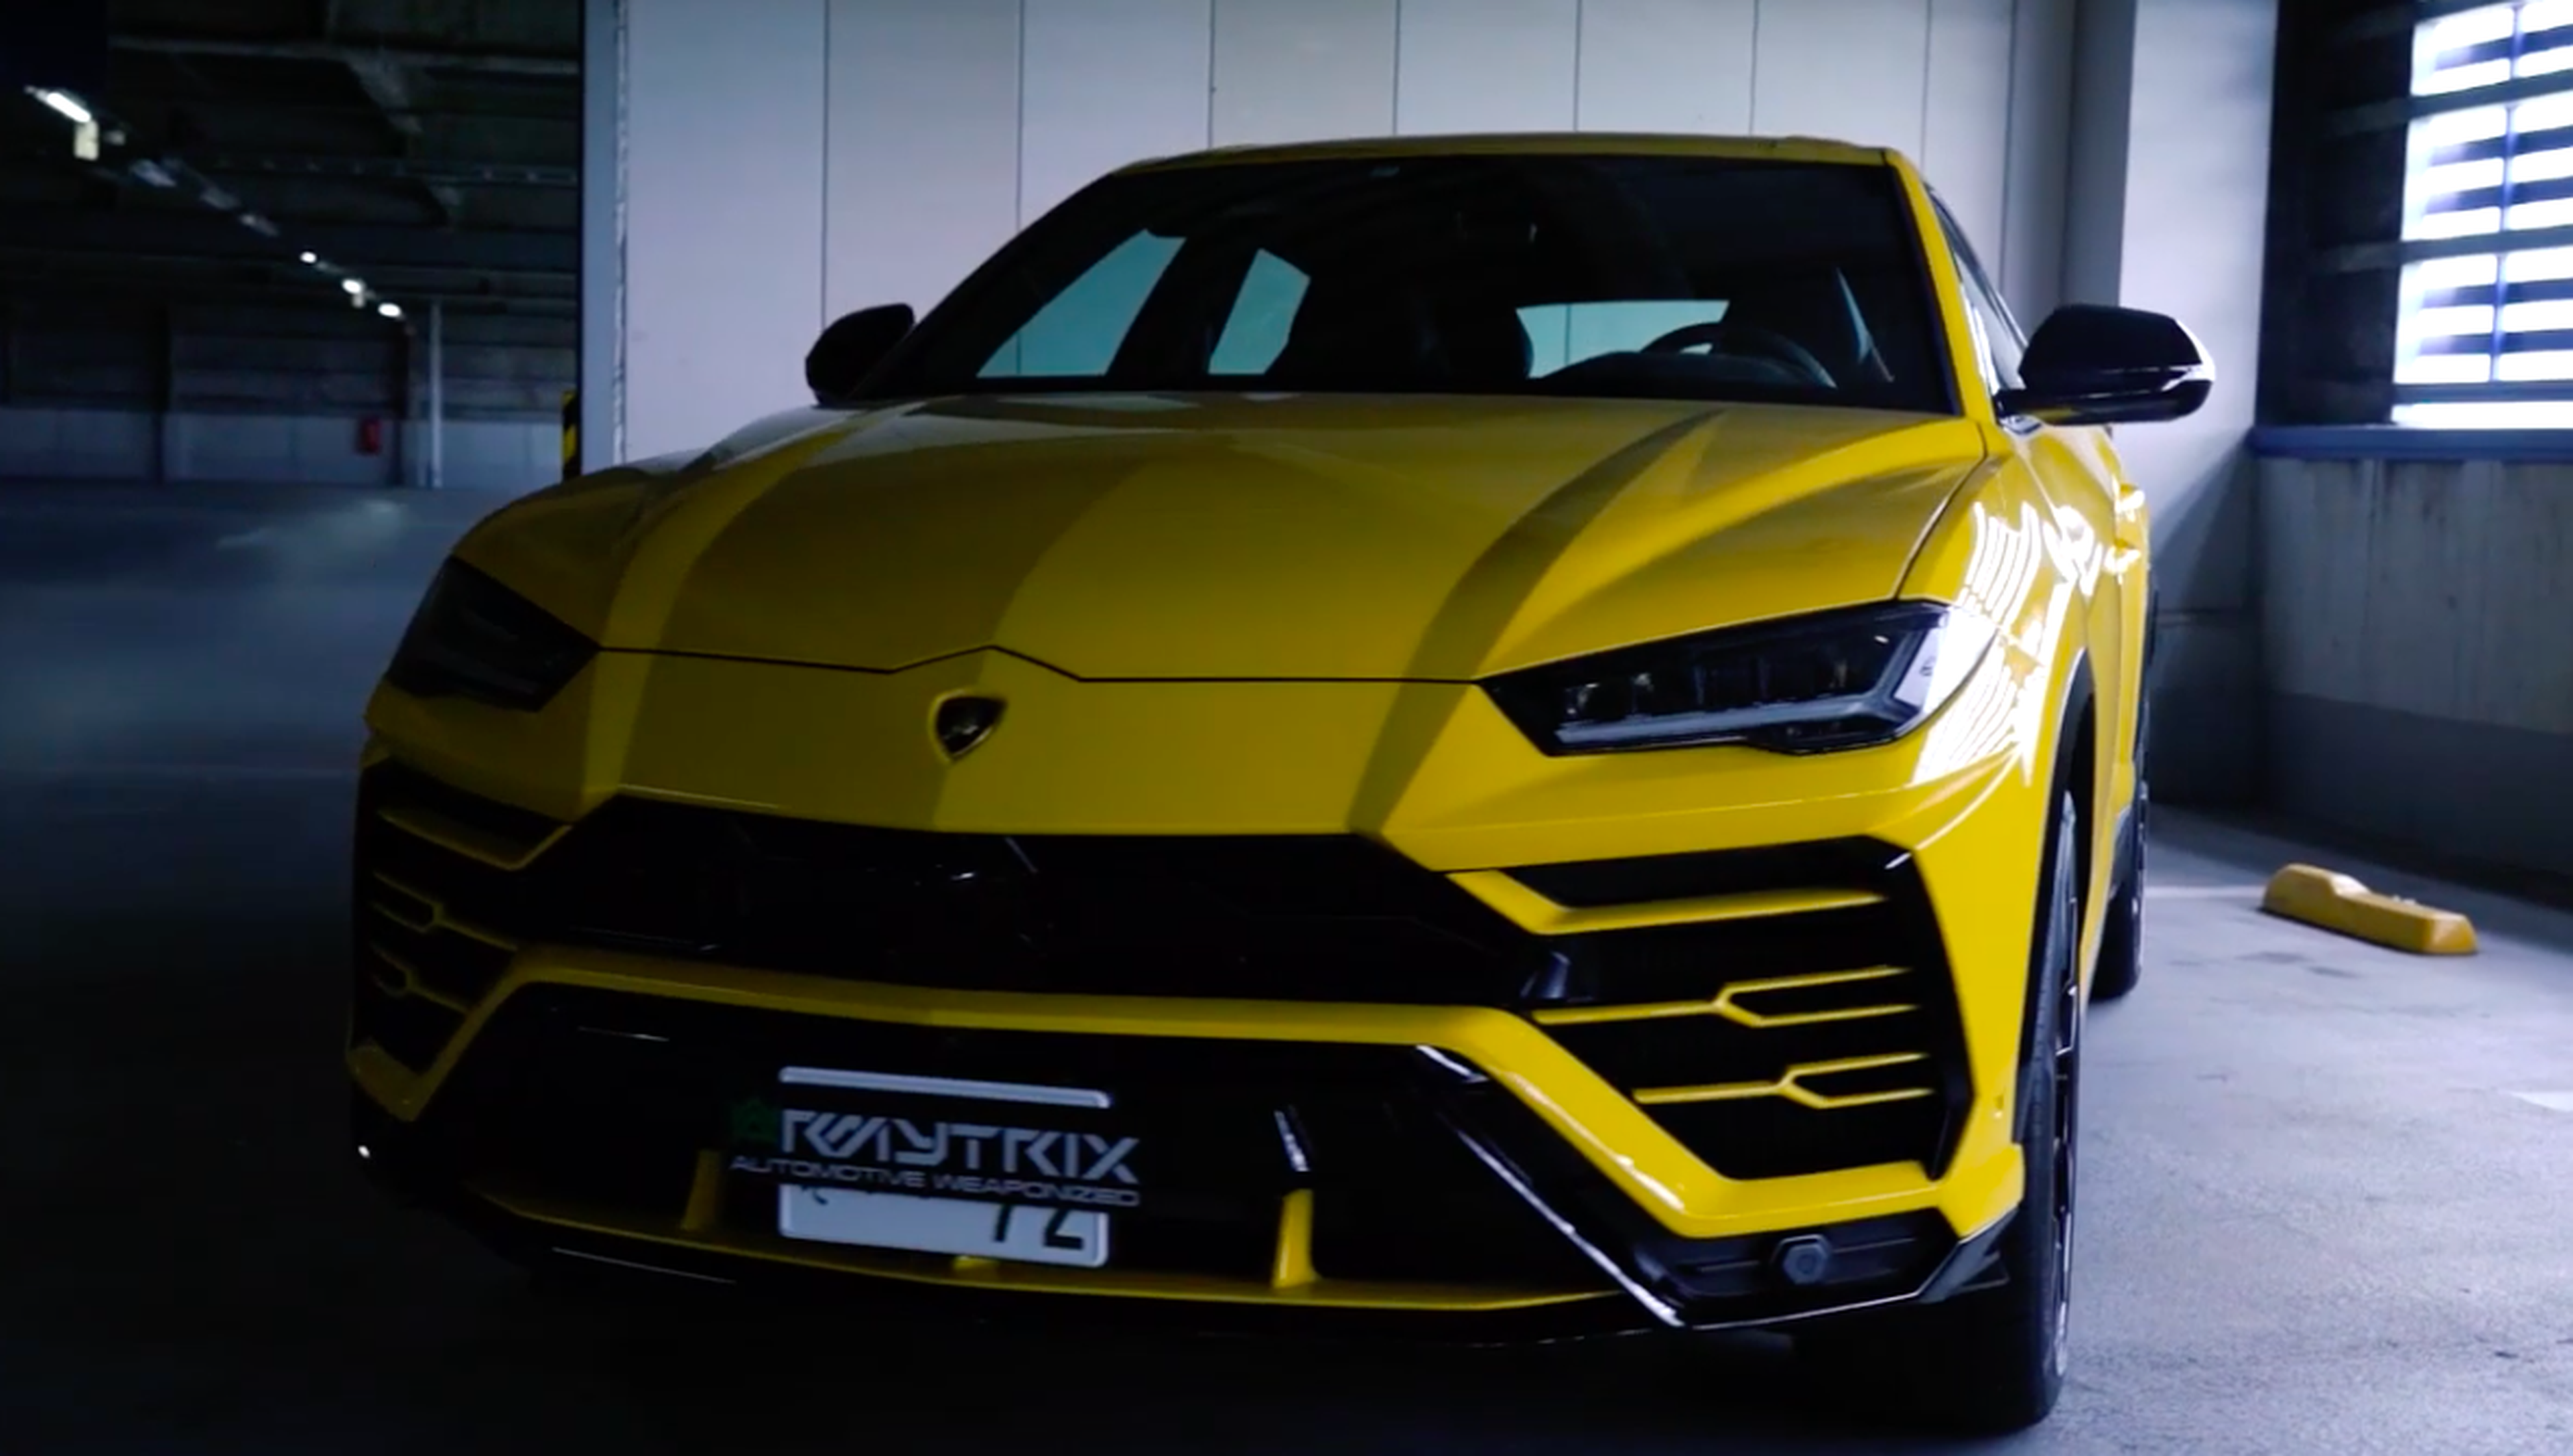 VÍDEO: Este Lamborghini Urus con escapes modificados es capaz de despertar a todo el vecindario